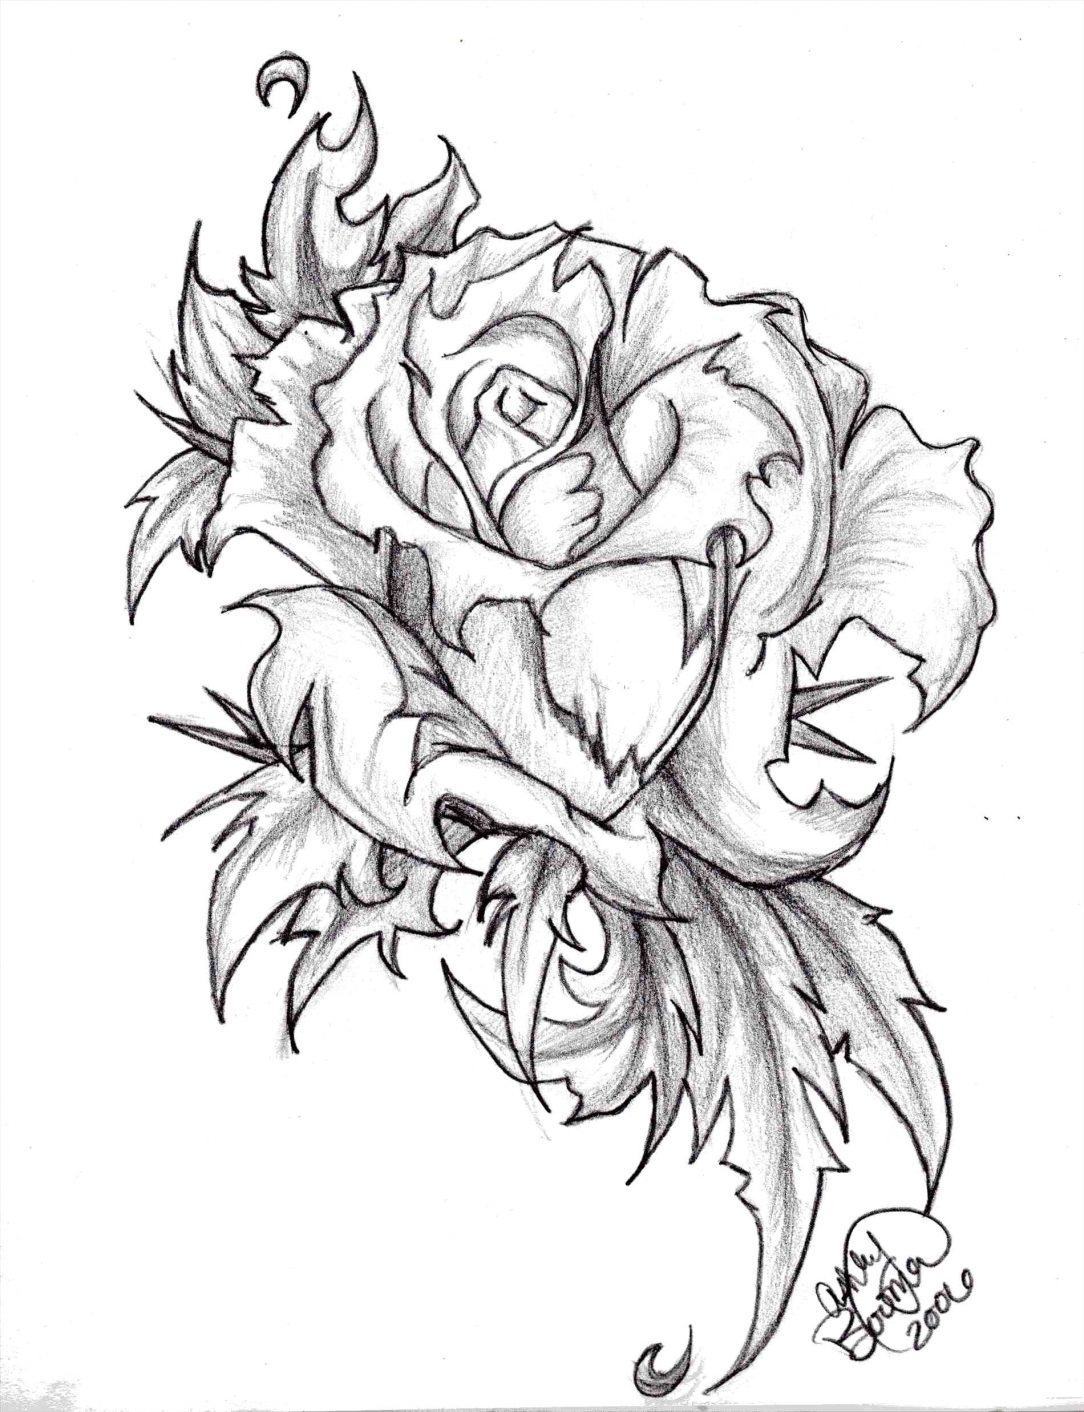 Vẽ hoa hồng đen trắng bằng bút chì